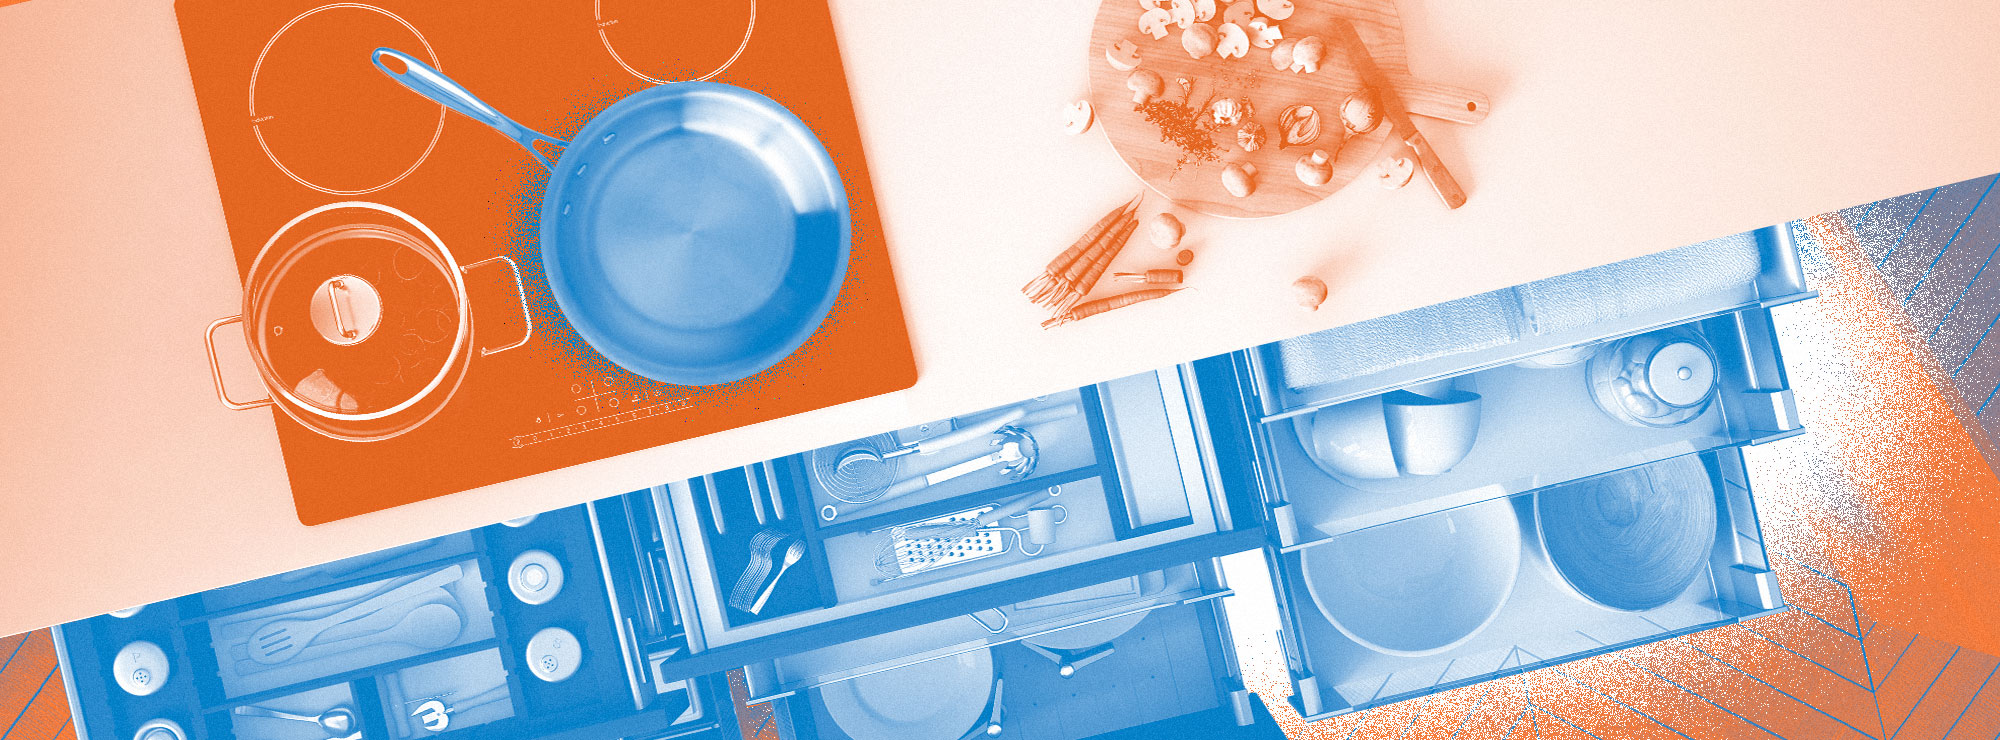 Полноразмерная обложка поста на тему: Как организовать пространство маленькой кухни, чтобы на всё хватило места и ничего не валялось